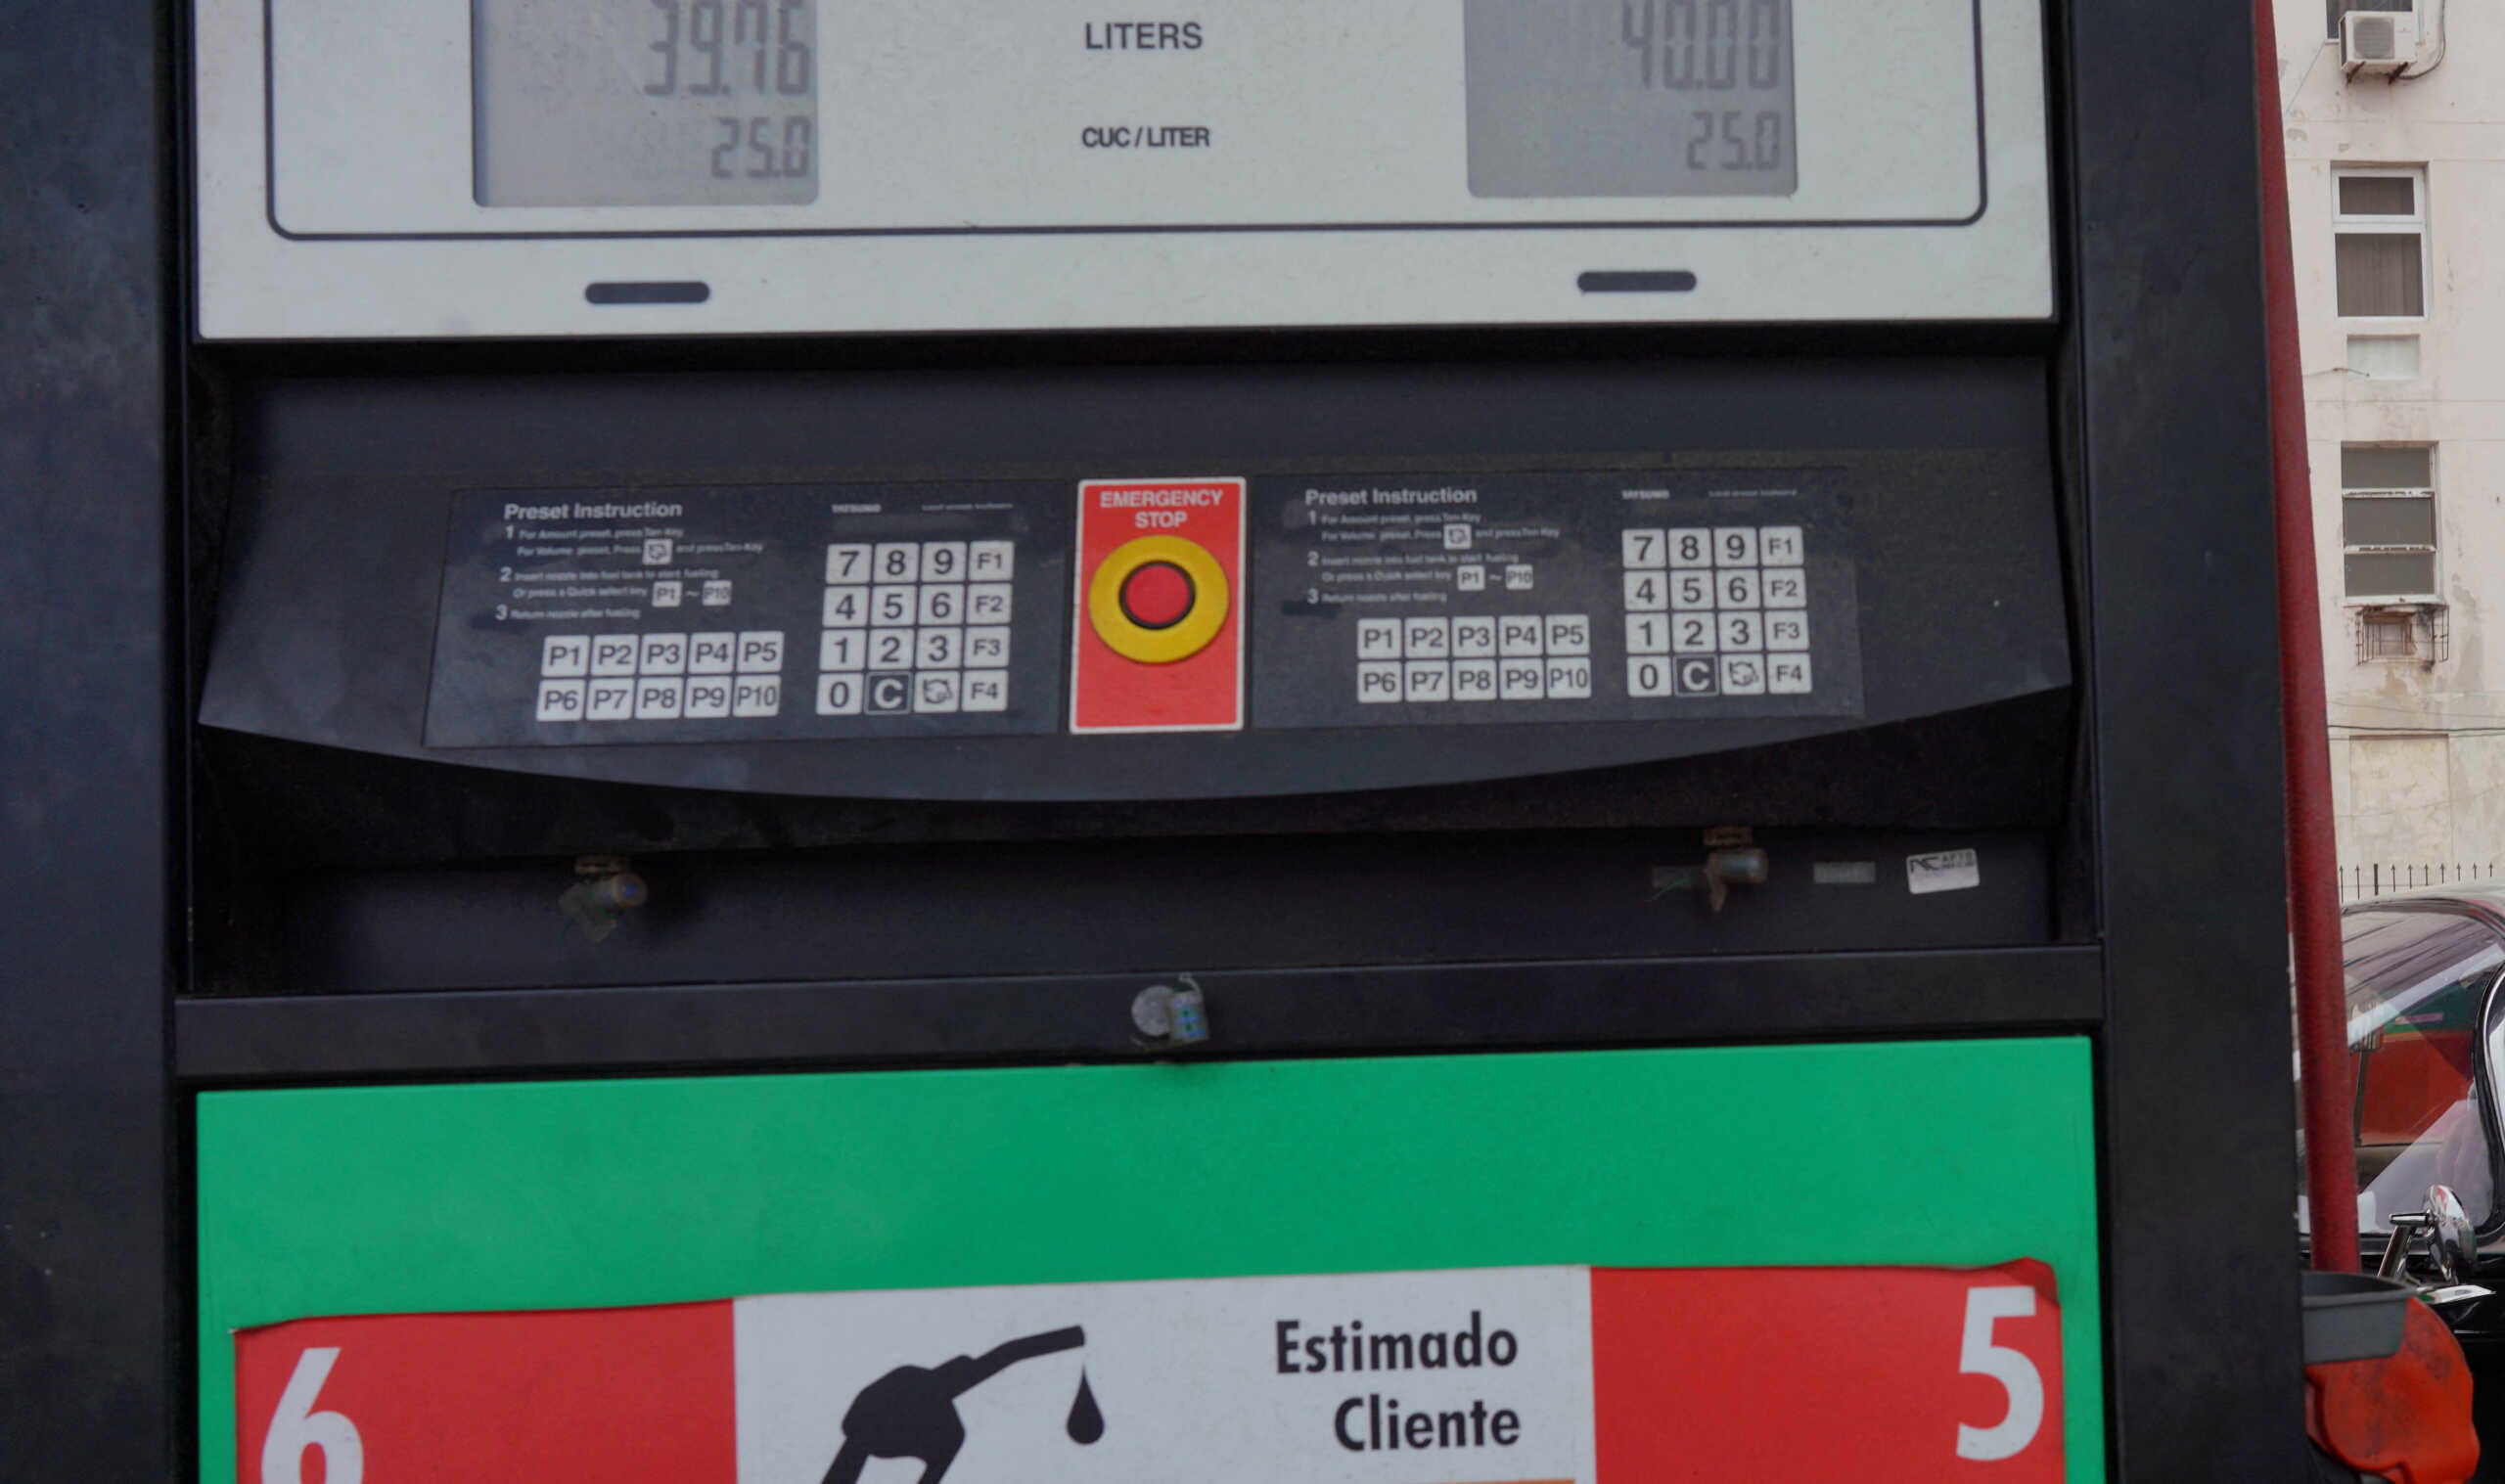 Μάλαγα: Ανήλικοι λήστεψαν βενζινάδικο αλλά πλήρωσαν το αναψυκτικό που πήραν